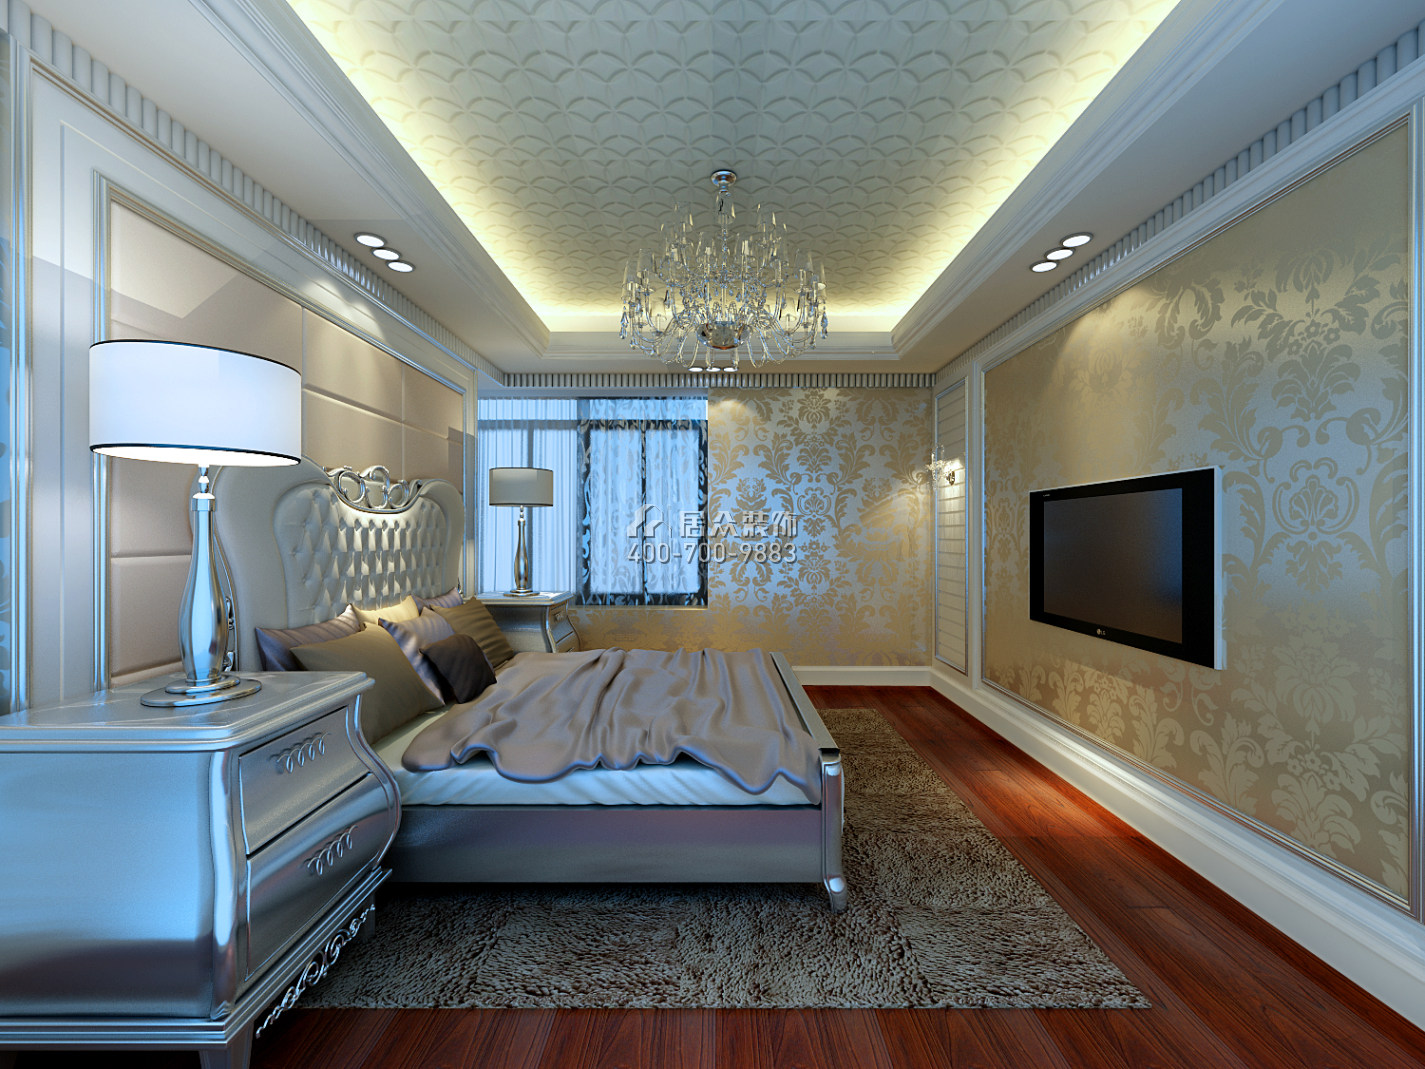 國貿藍海165平方米歐式風格平層戶型臥室裝修效果圖